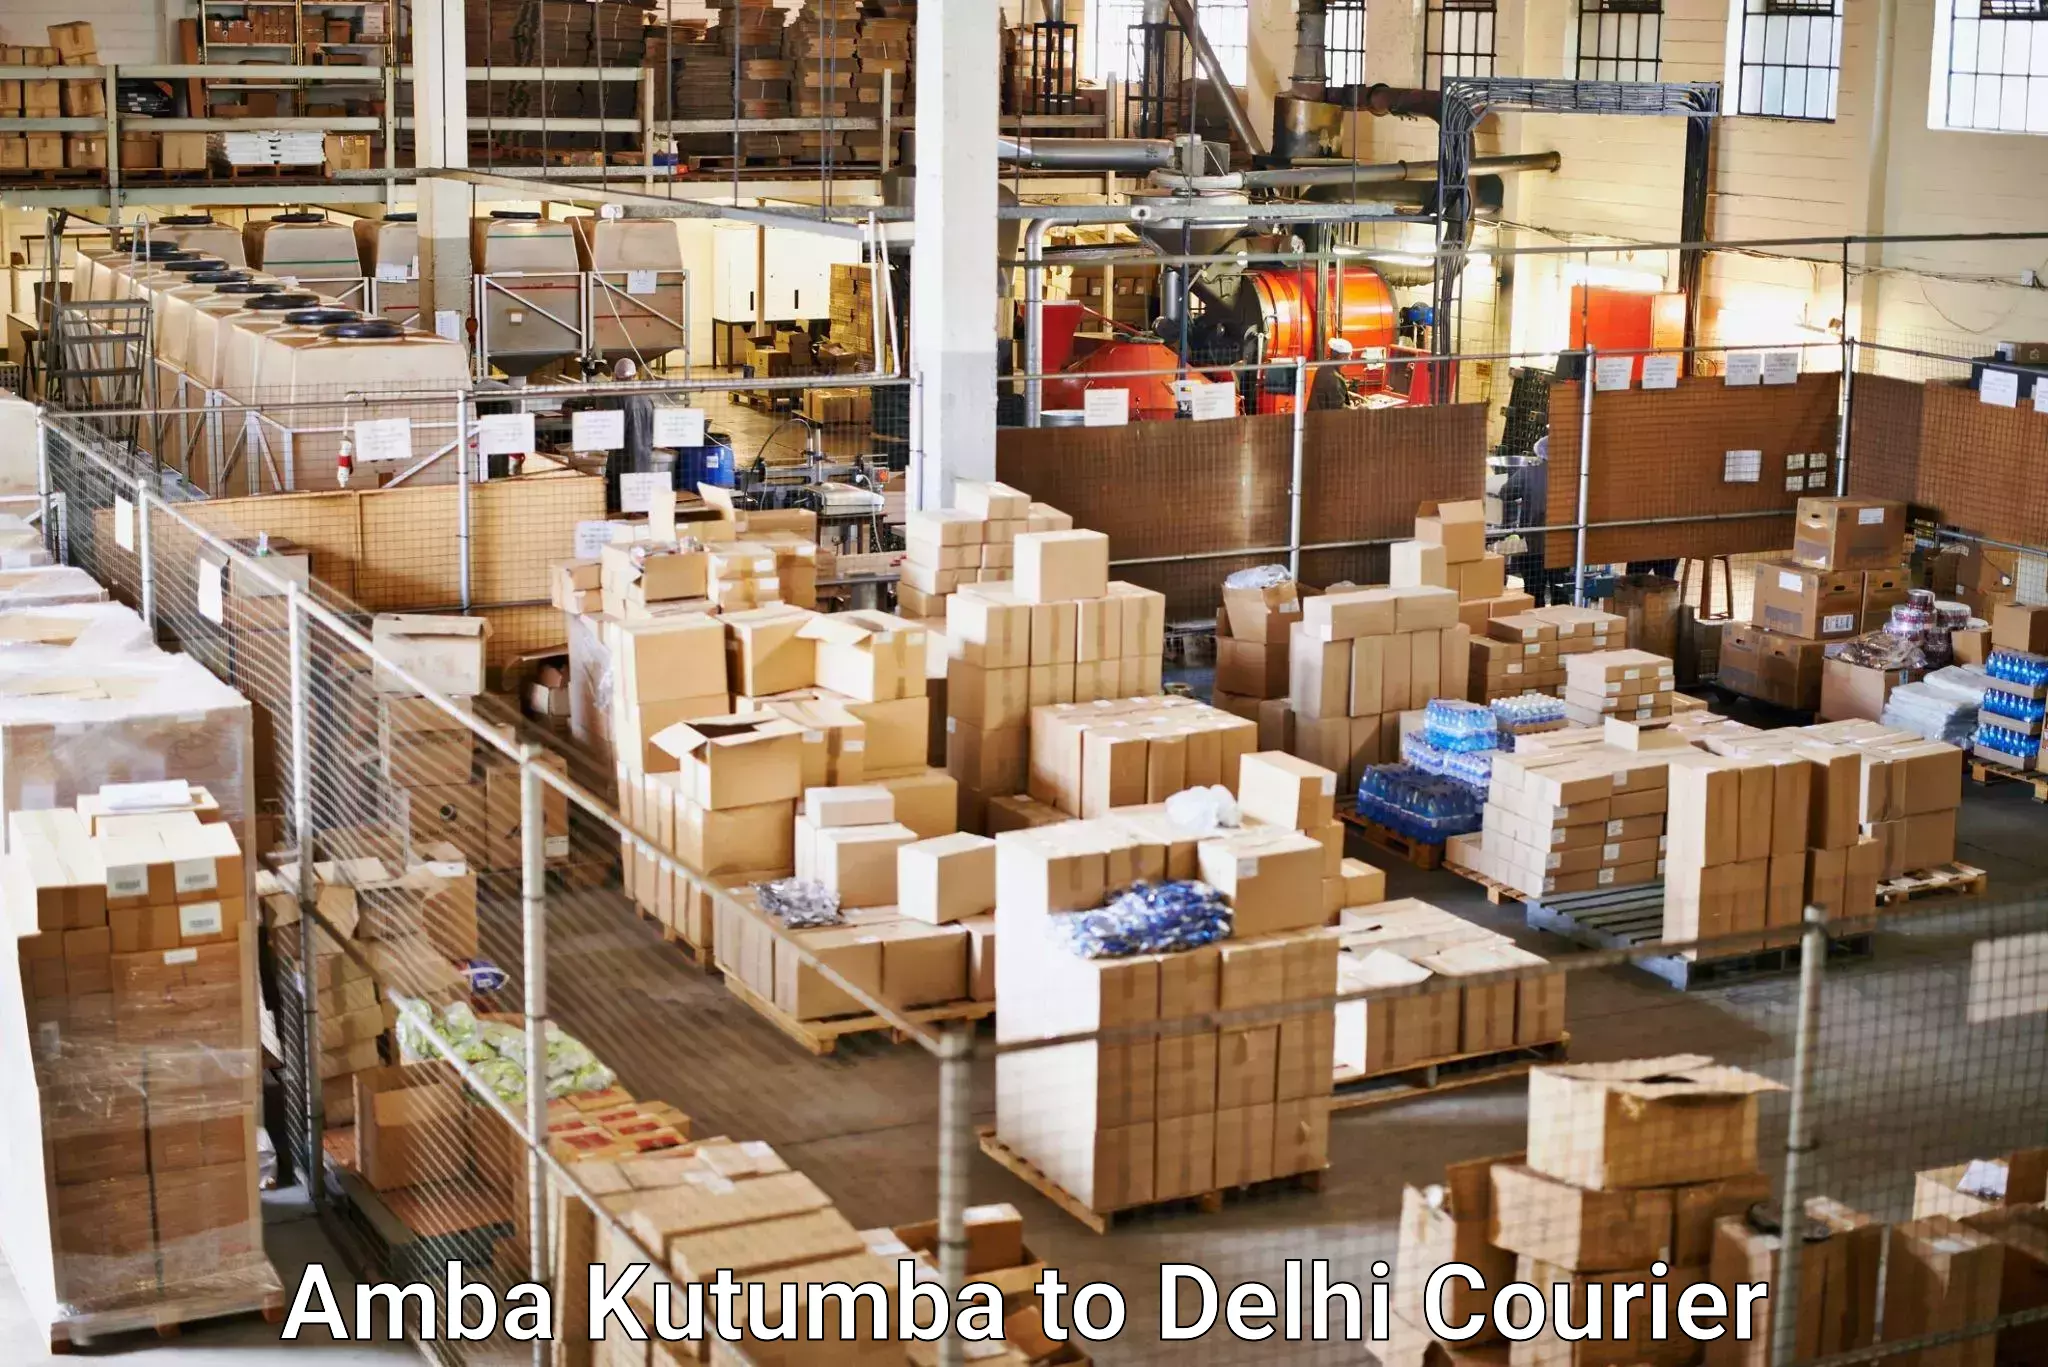 Digital courier platforms in Amba Kutumba to Delhi